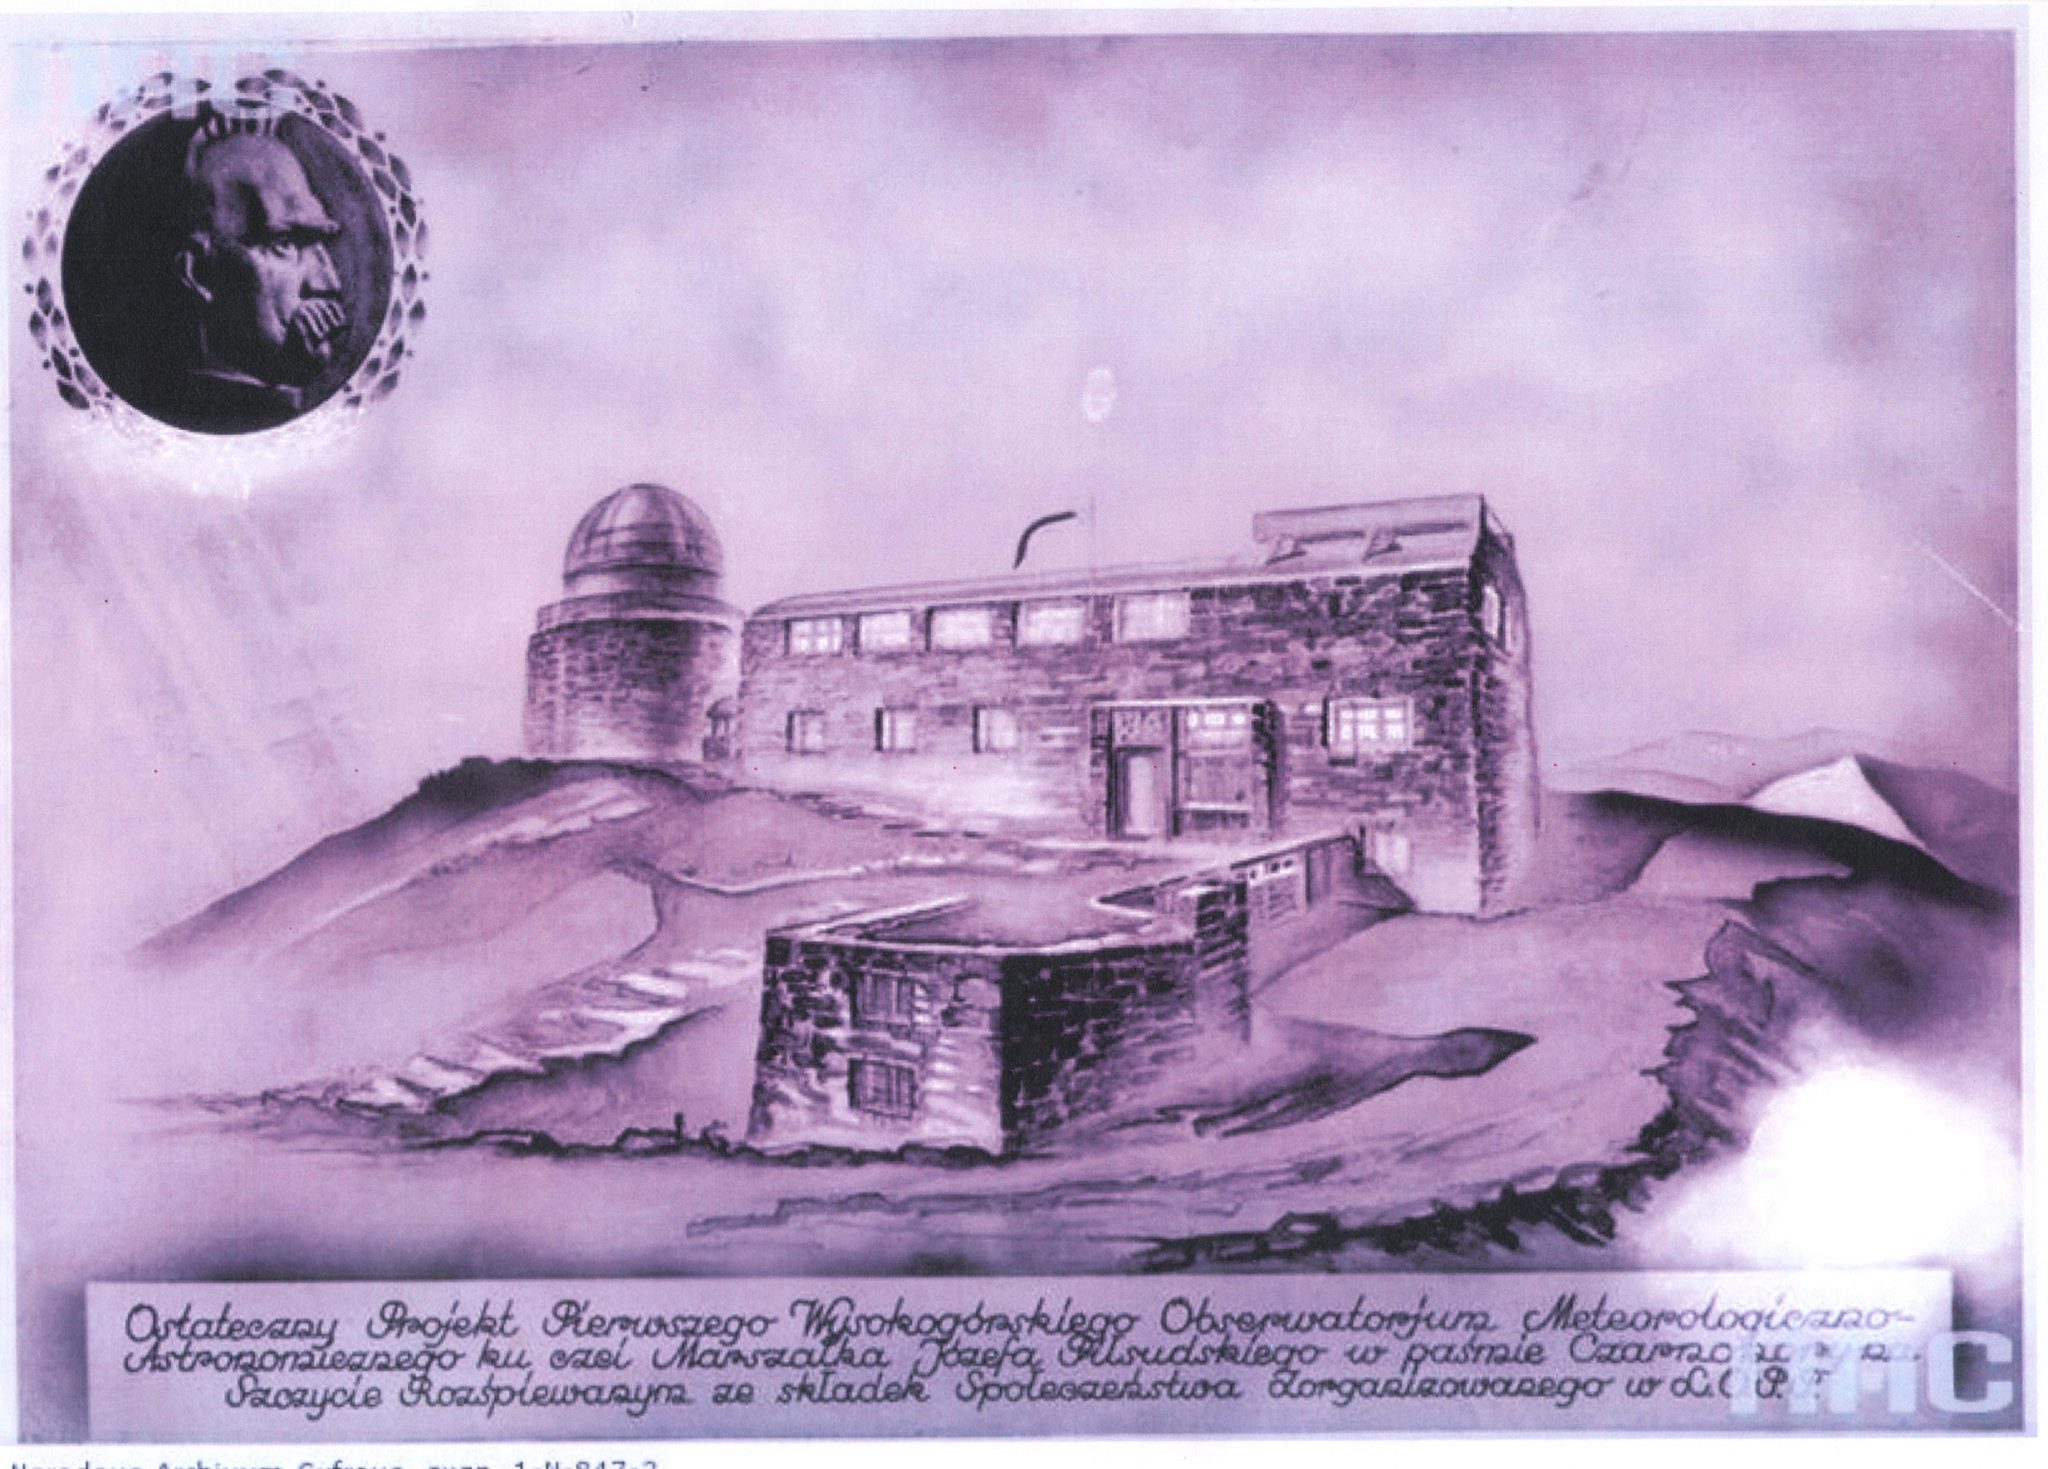 Zwycięski projekt konkursowy budowy Obserwatorium Astronomicznego UW na górze Pop Iwan, 1936 r.